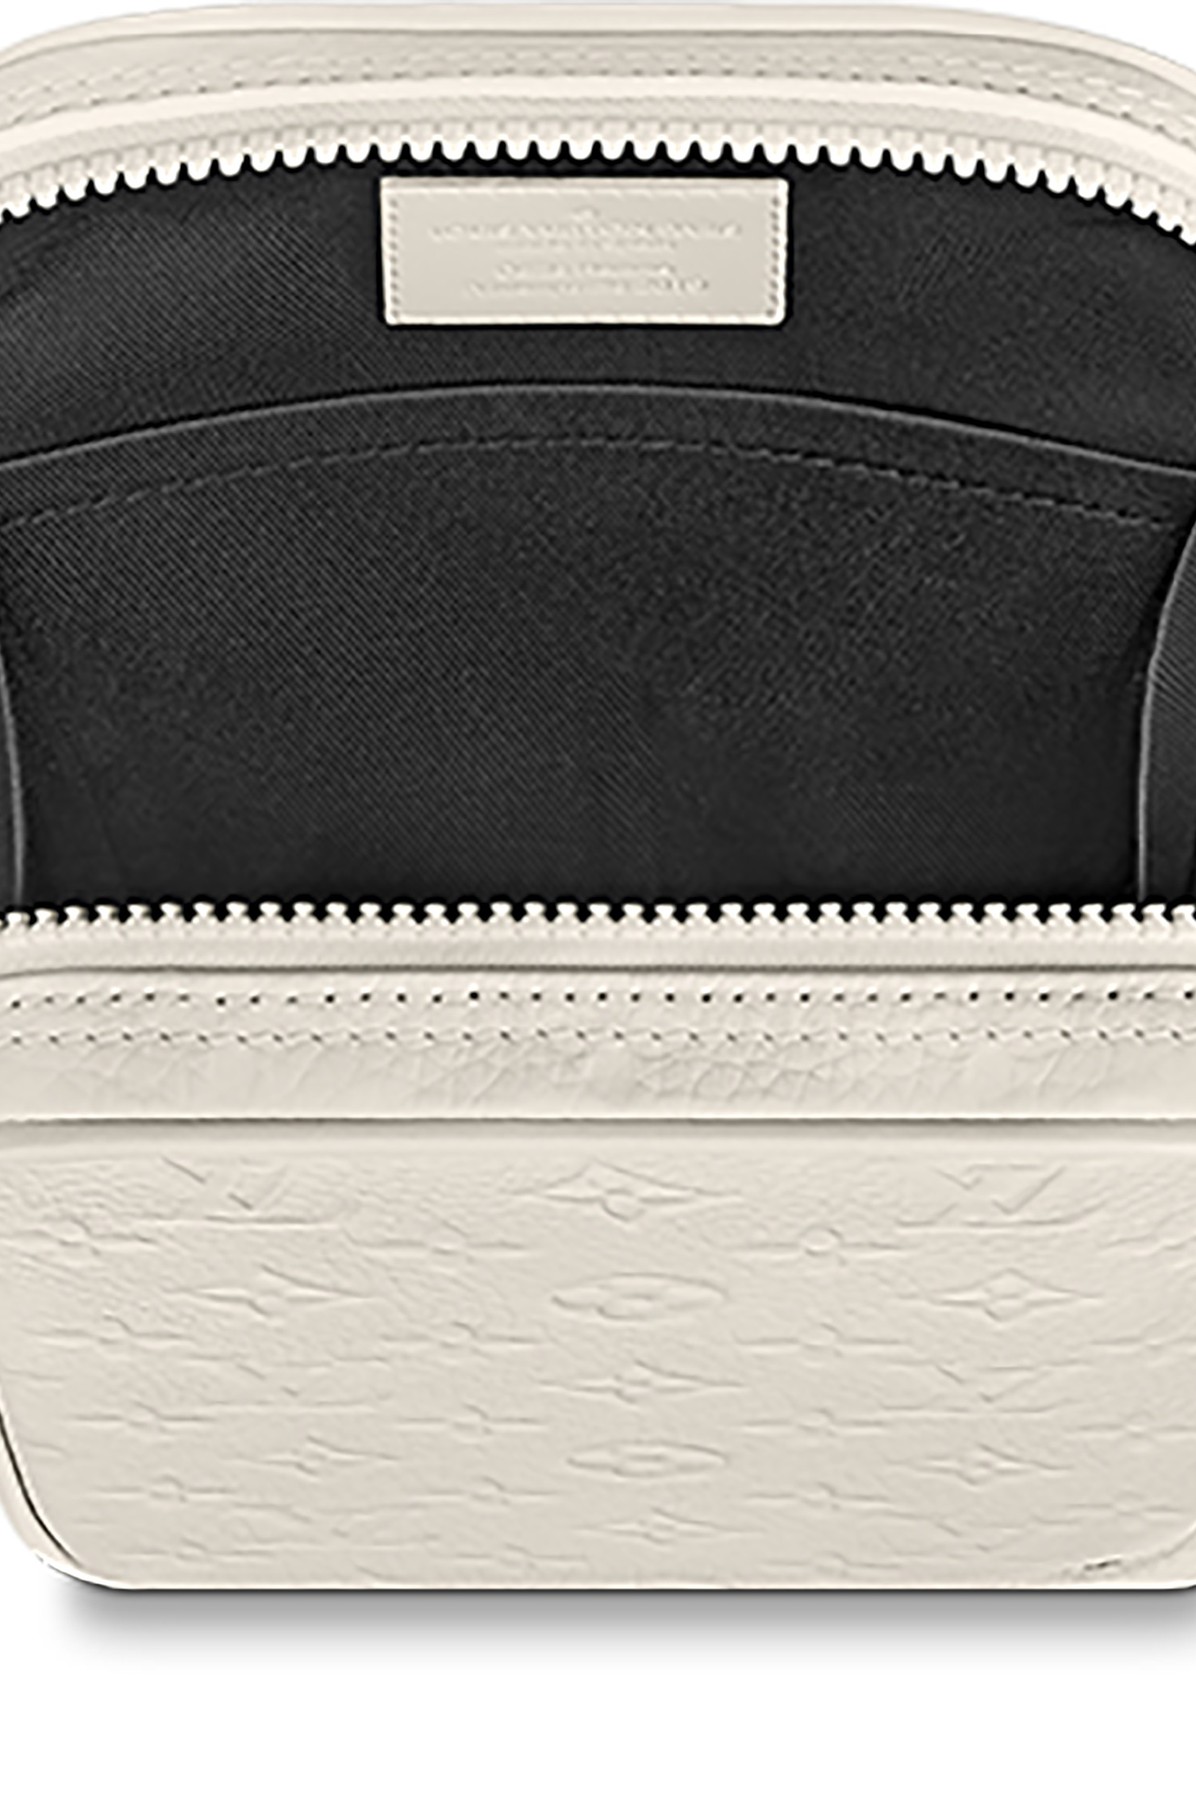 Louis Vuitton Utility Side Bag Monogram Powder White in Taurillon